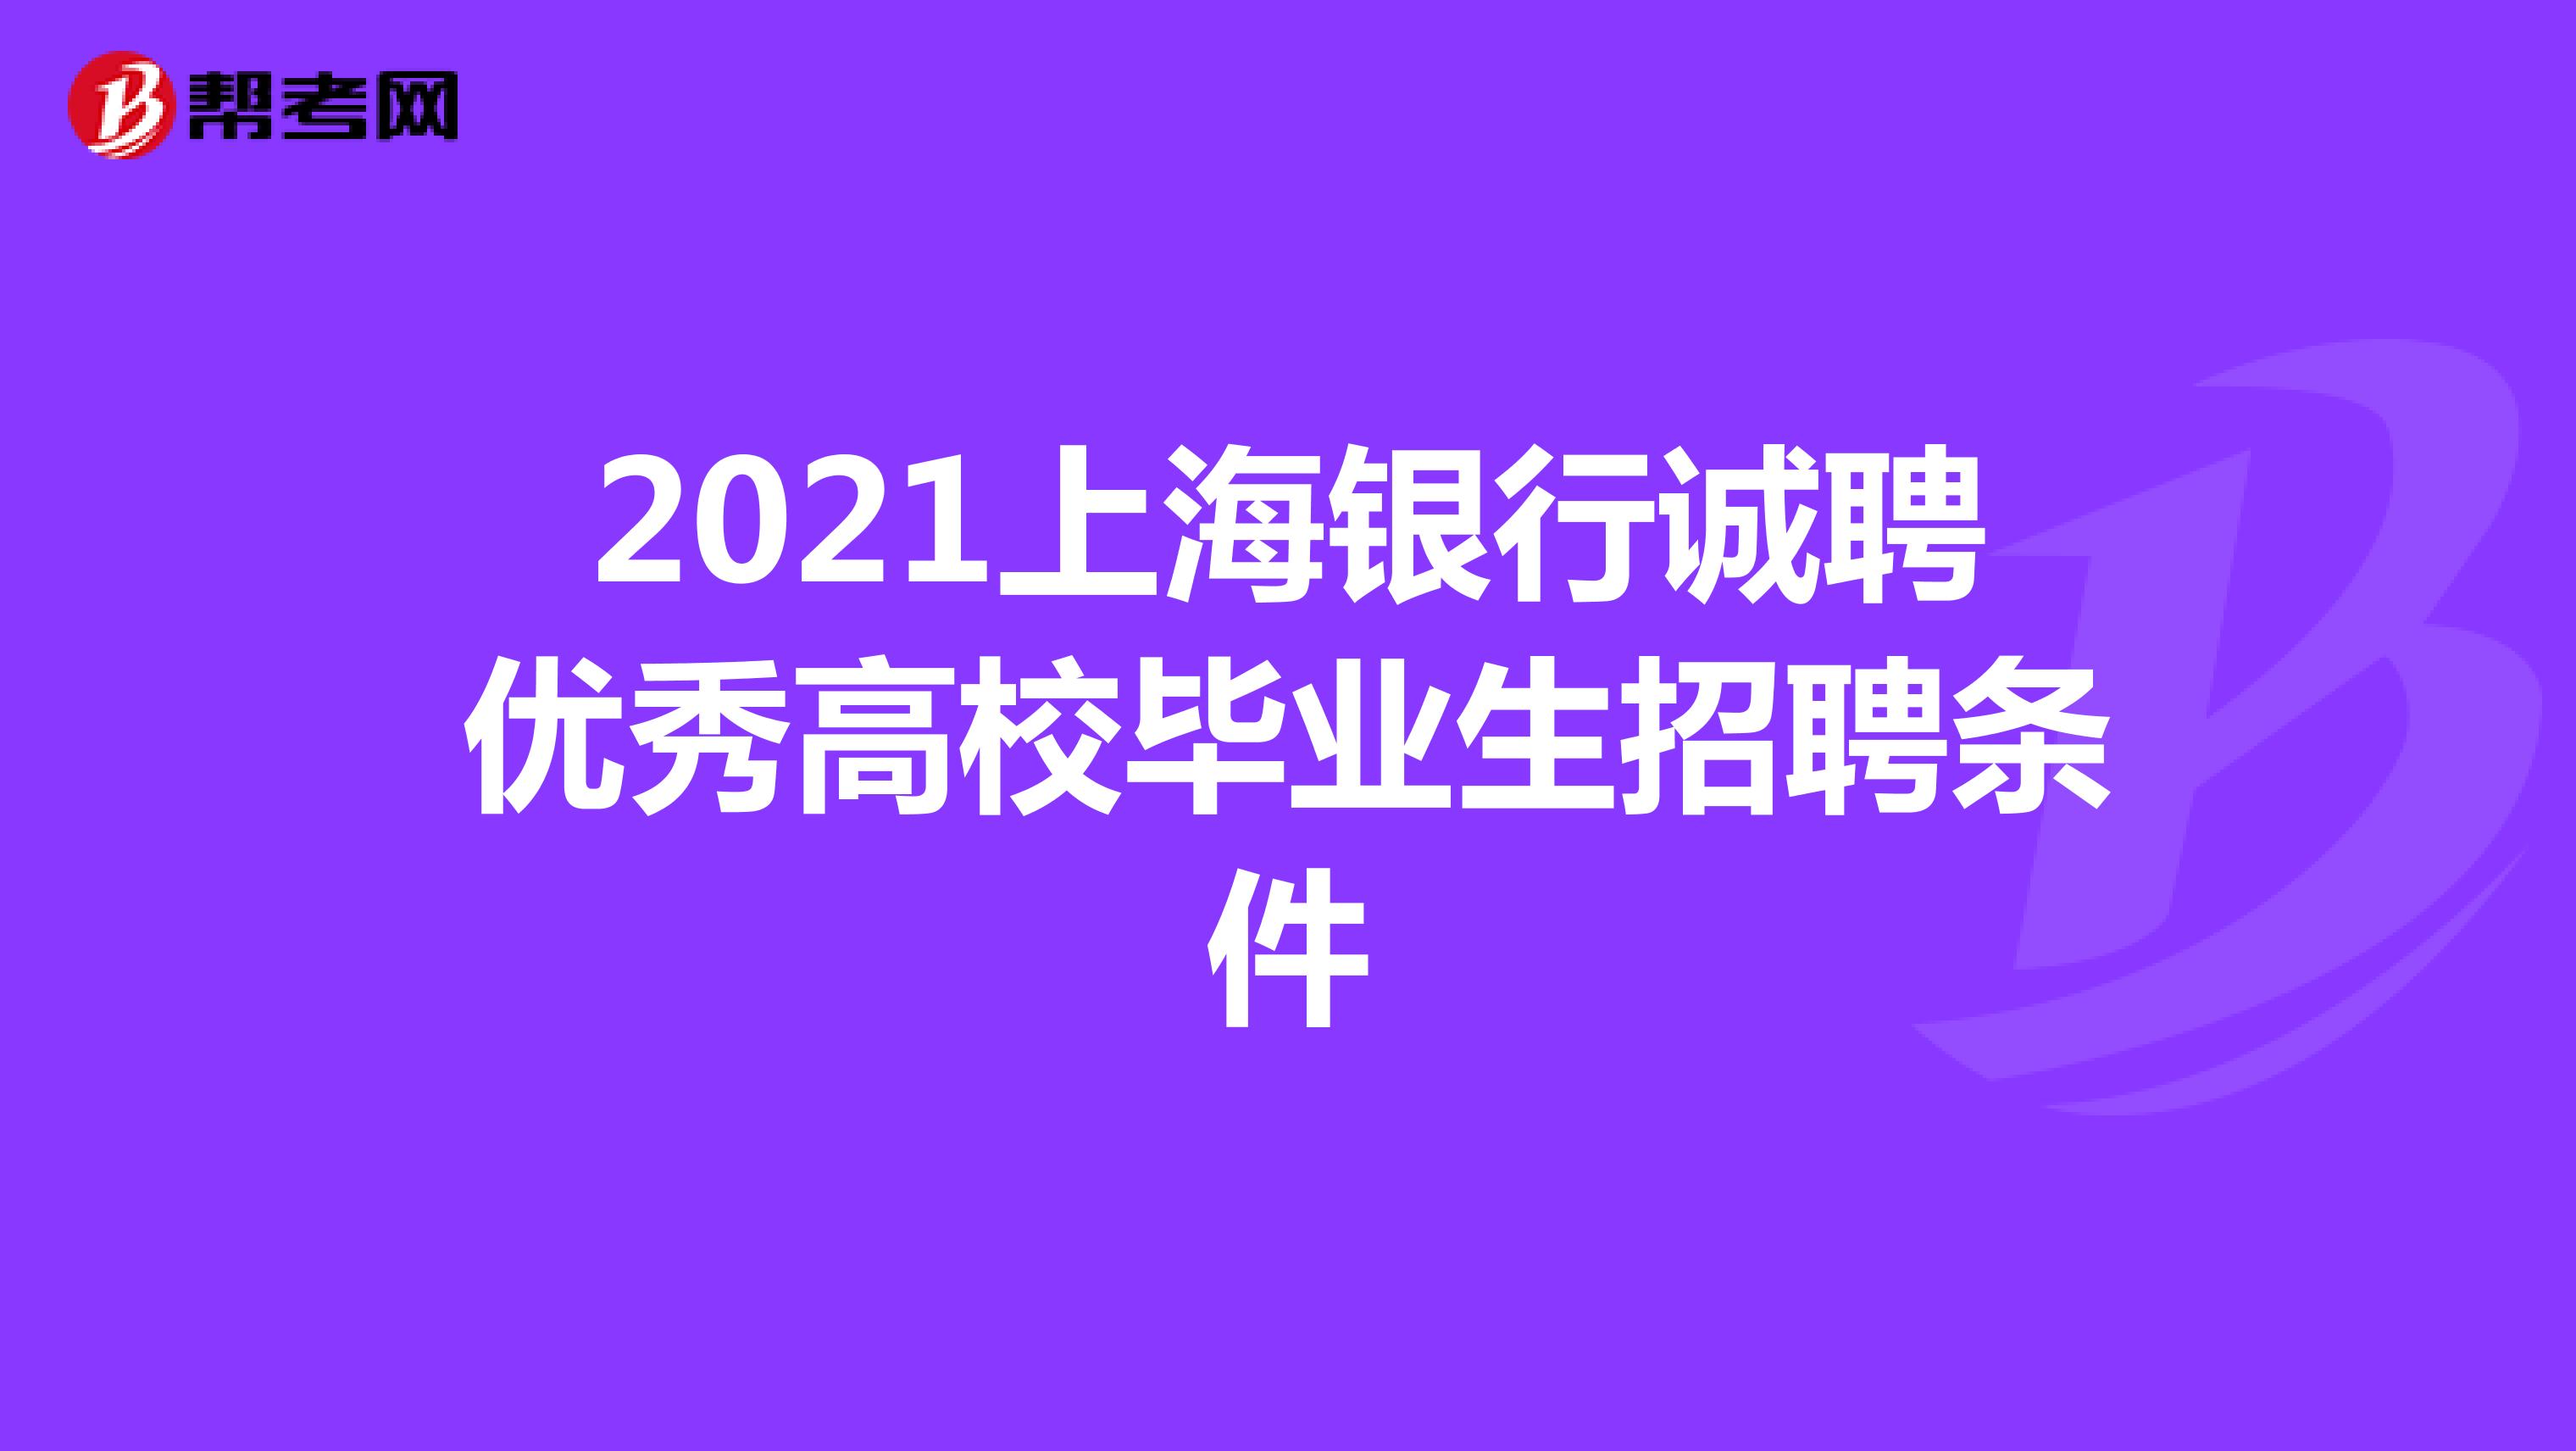 2021上海银行诚聘优秀高校毕业生招聘条件